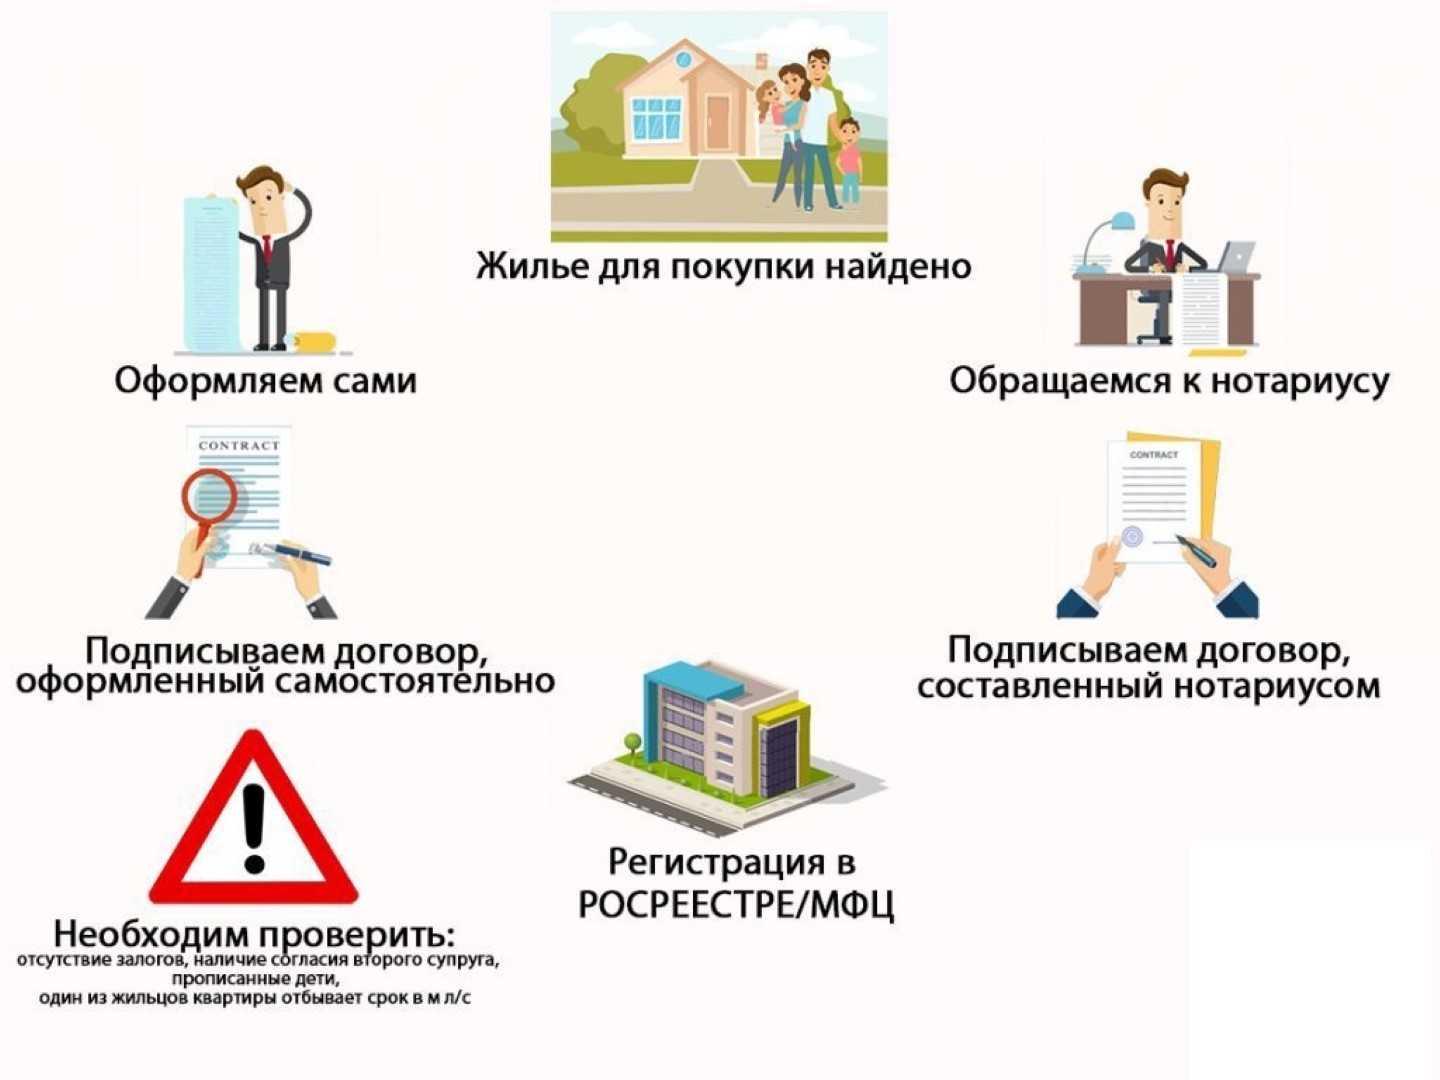 Рассрочка или ипотека – что выгоднее? – статья, финансовые вопросы – гдеэтотдом.ру